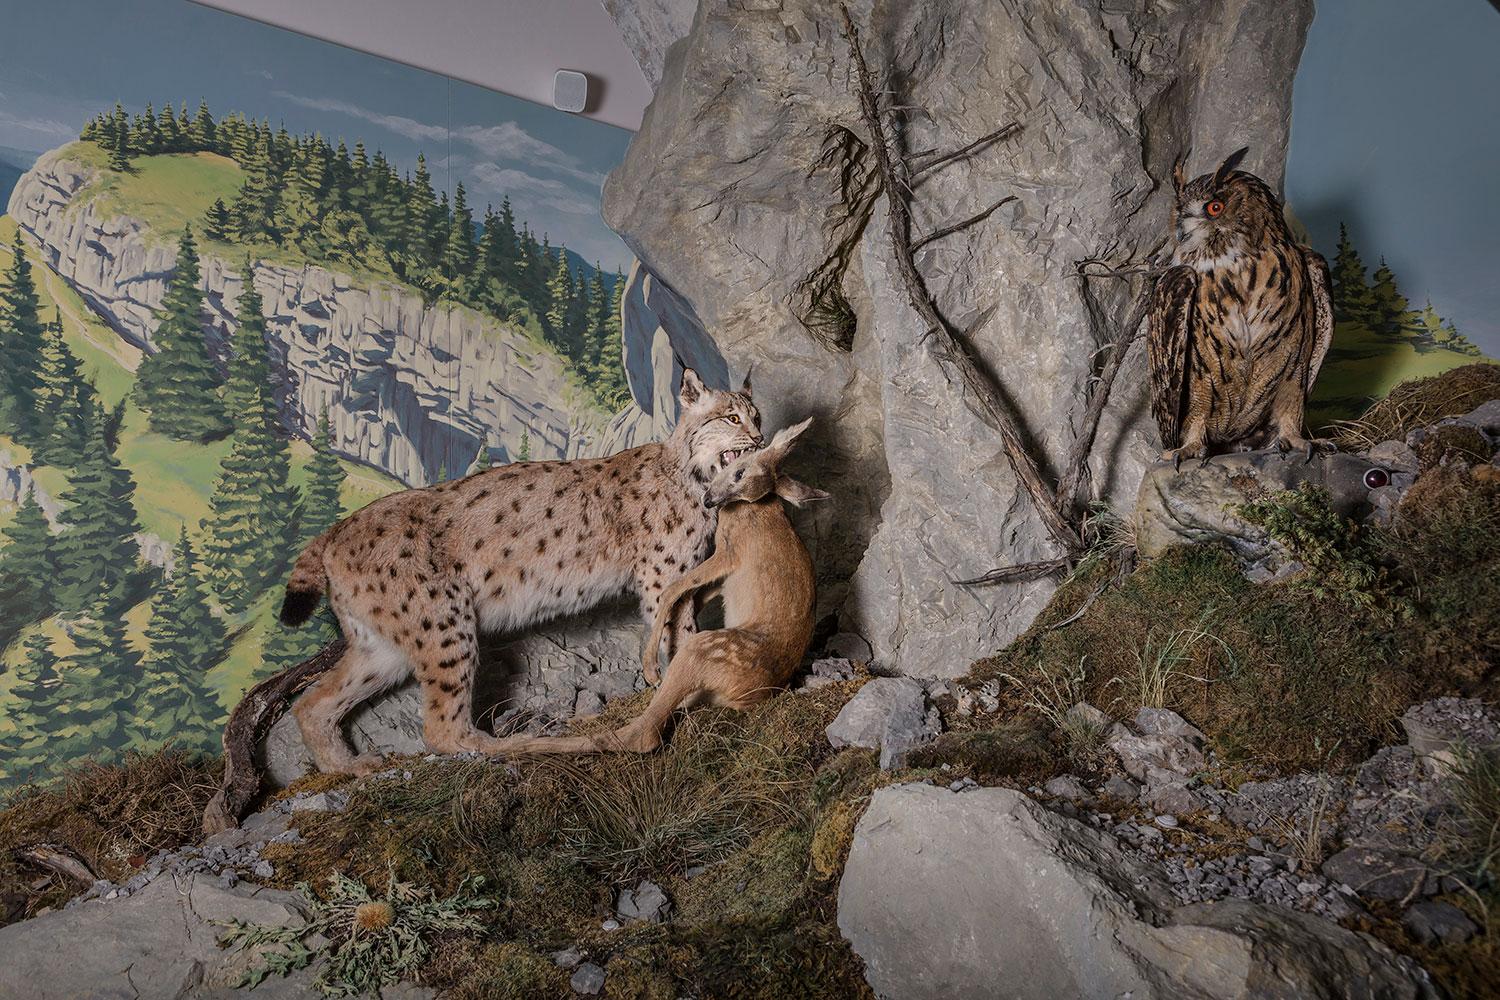 V Slovenskom múzeu ochrany prírody a jaskyniarstva v Liptovskom Mikuláši sú aj tradičné expozície s diorámami prírody a vypchatými zvieratami. Tak ako v bratislavskom Prírodovedeckom múzeu sú akoby v televíznych obrazovkách.